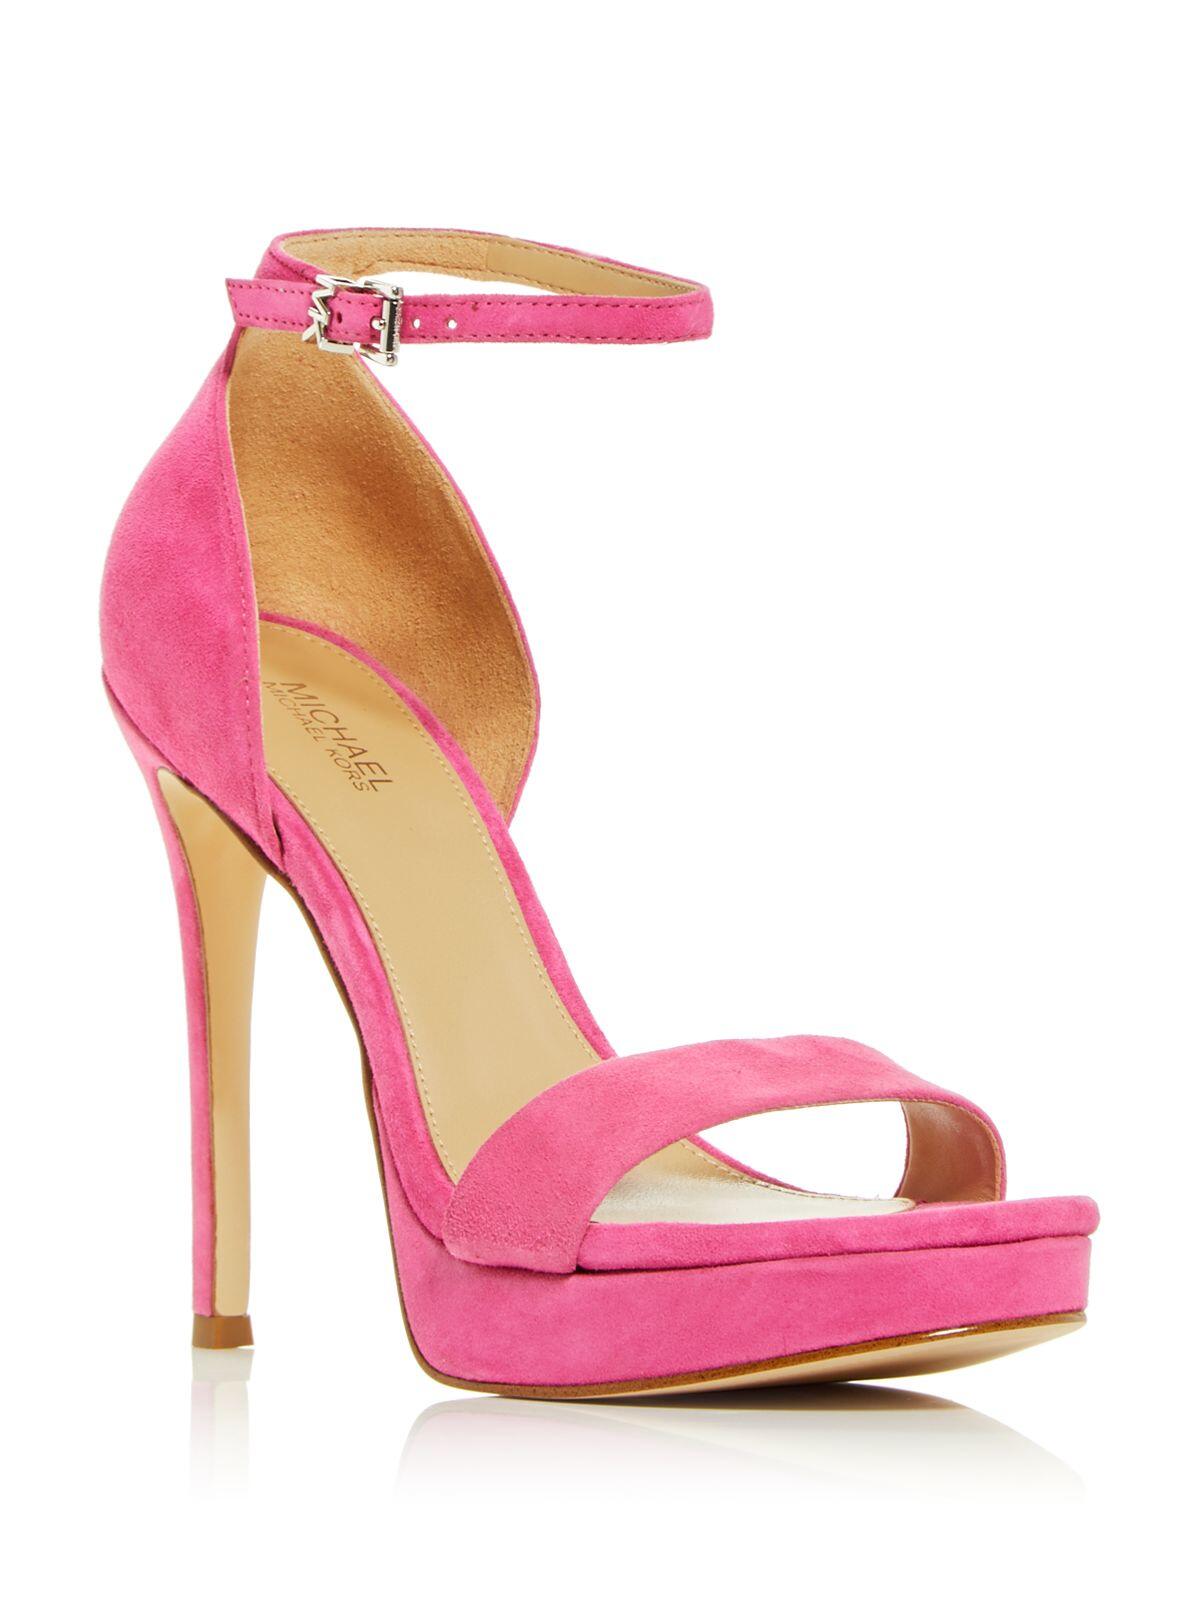 MICHAEL MICHAEL KORS Womens Pink Ankle Strap Jordyn Open Toe Stiletto Buckle Leather Dress Heeled Sandal 5.5 M